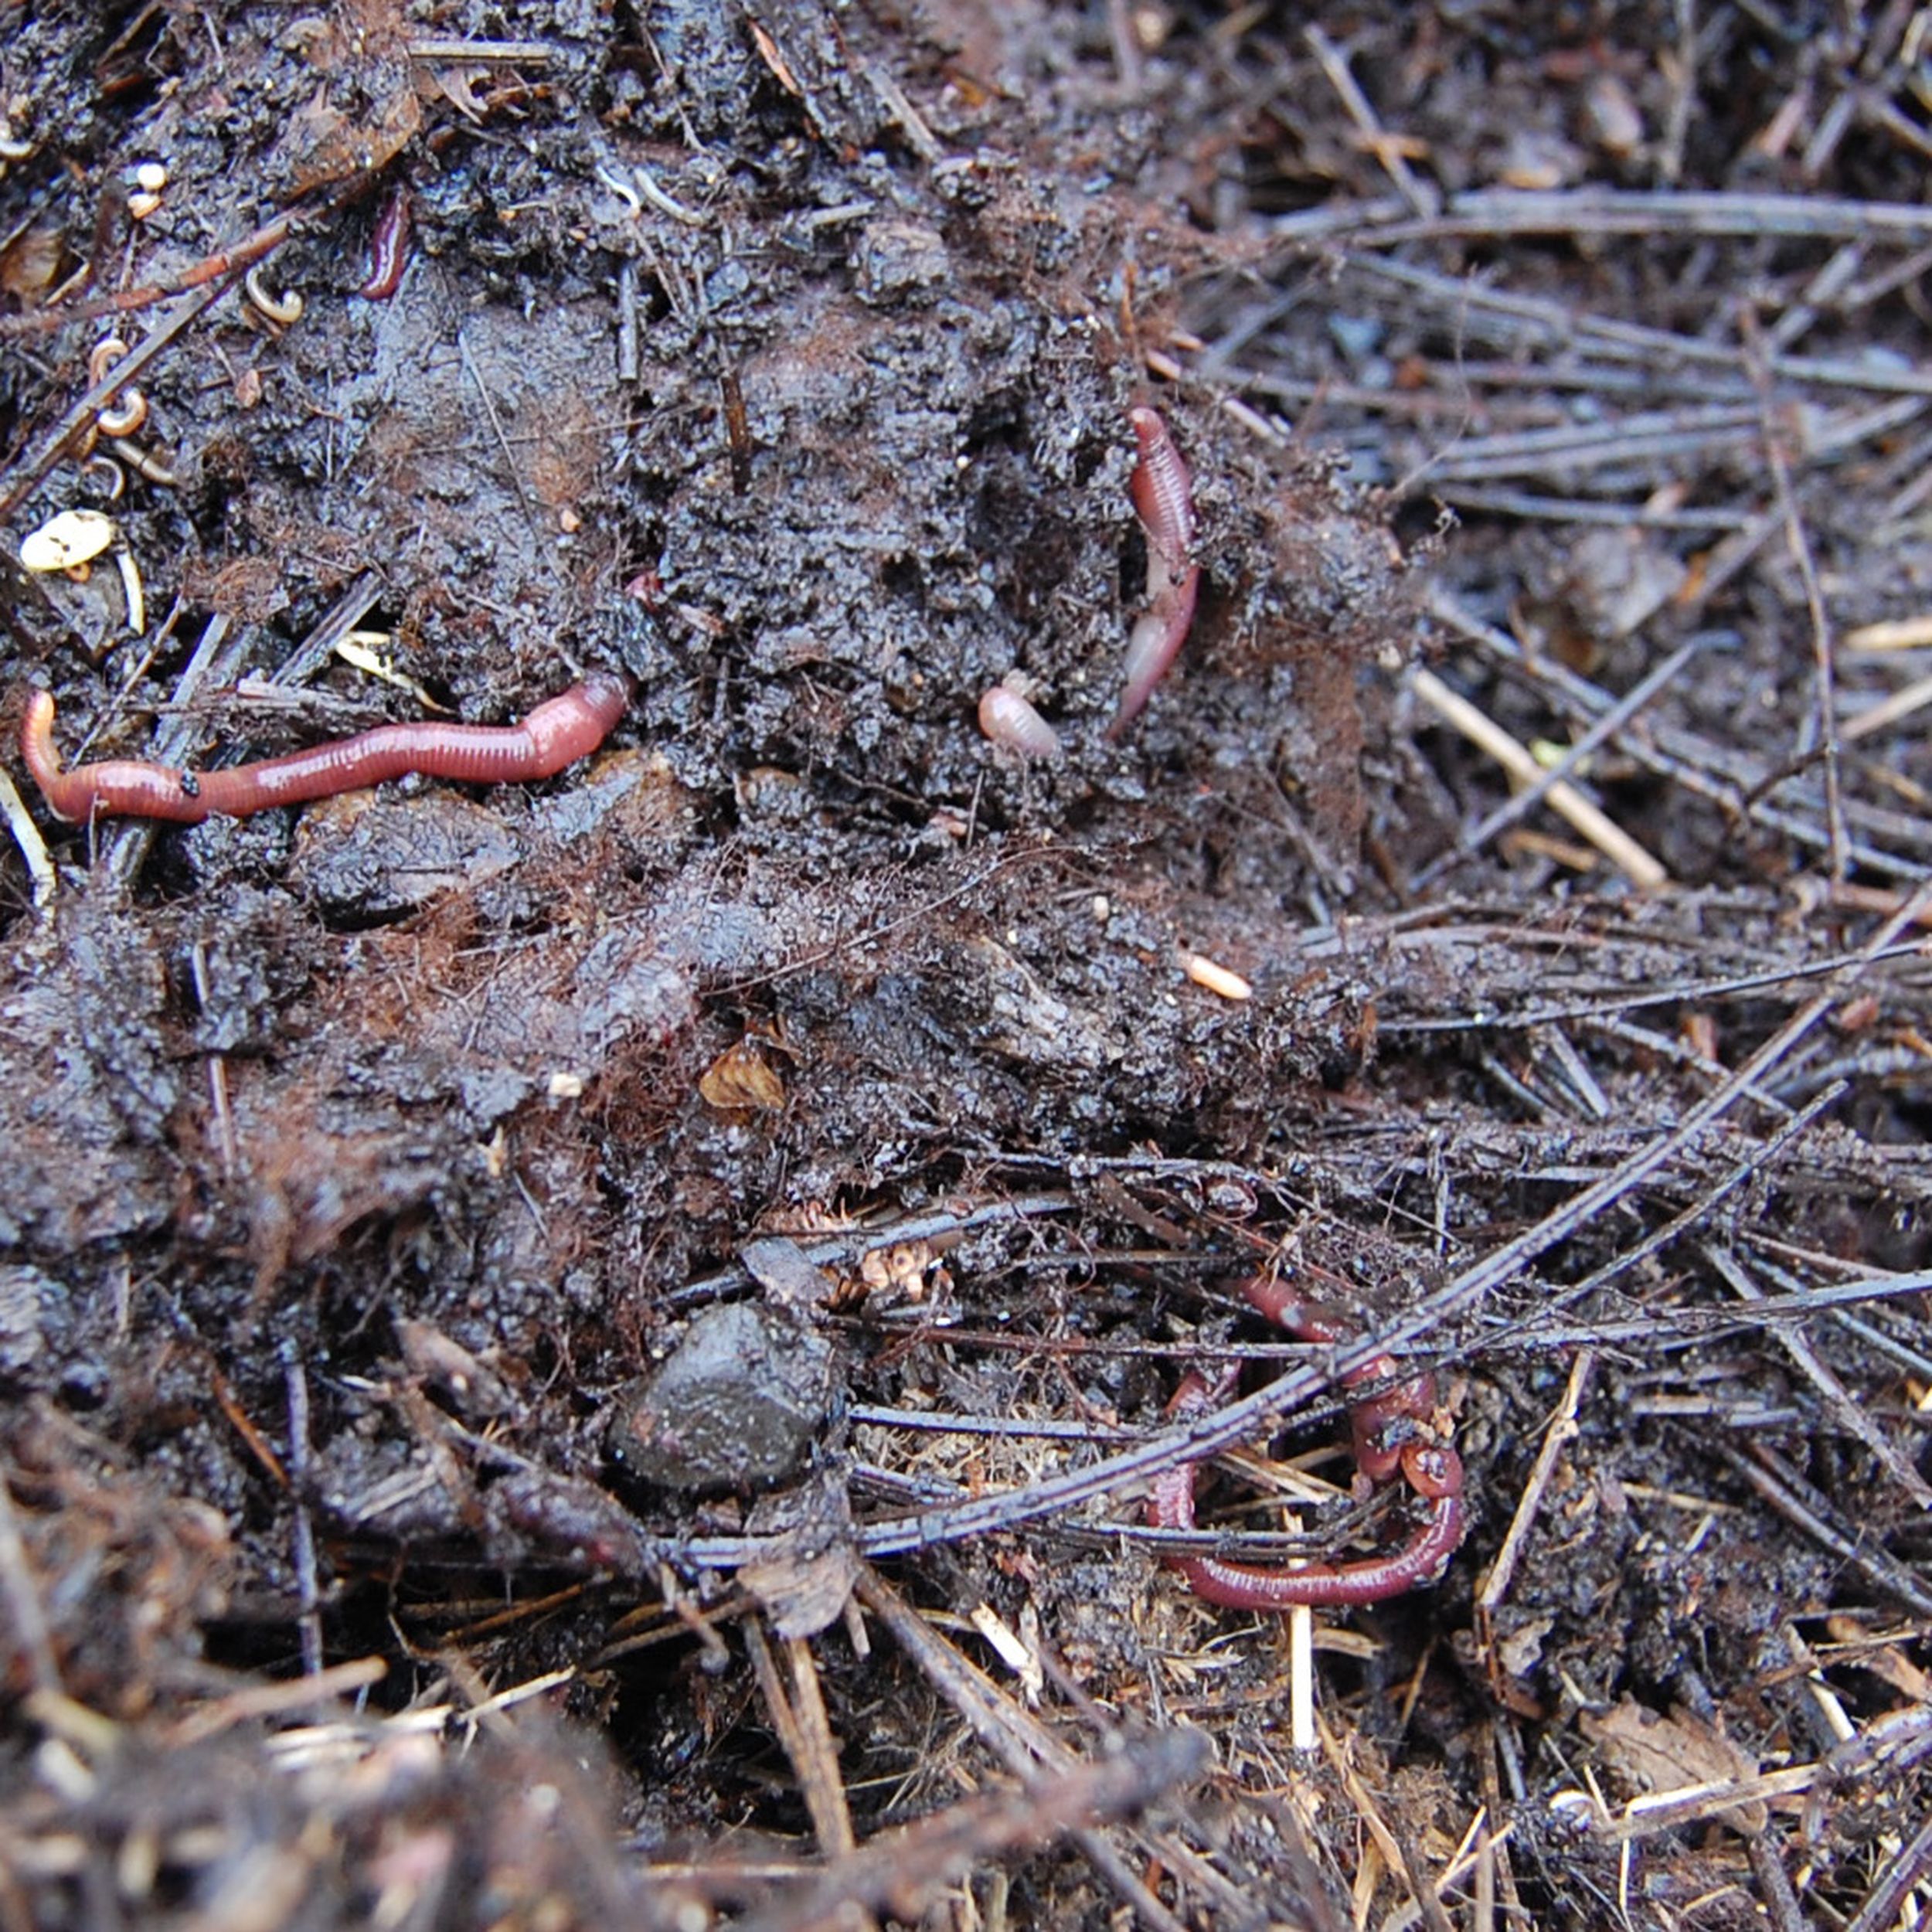 Do Earthworms Go into Hibernation?